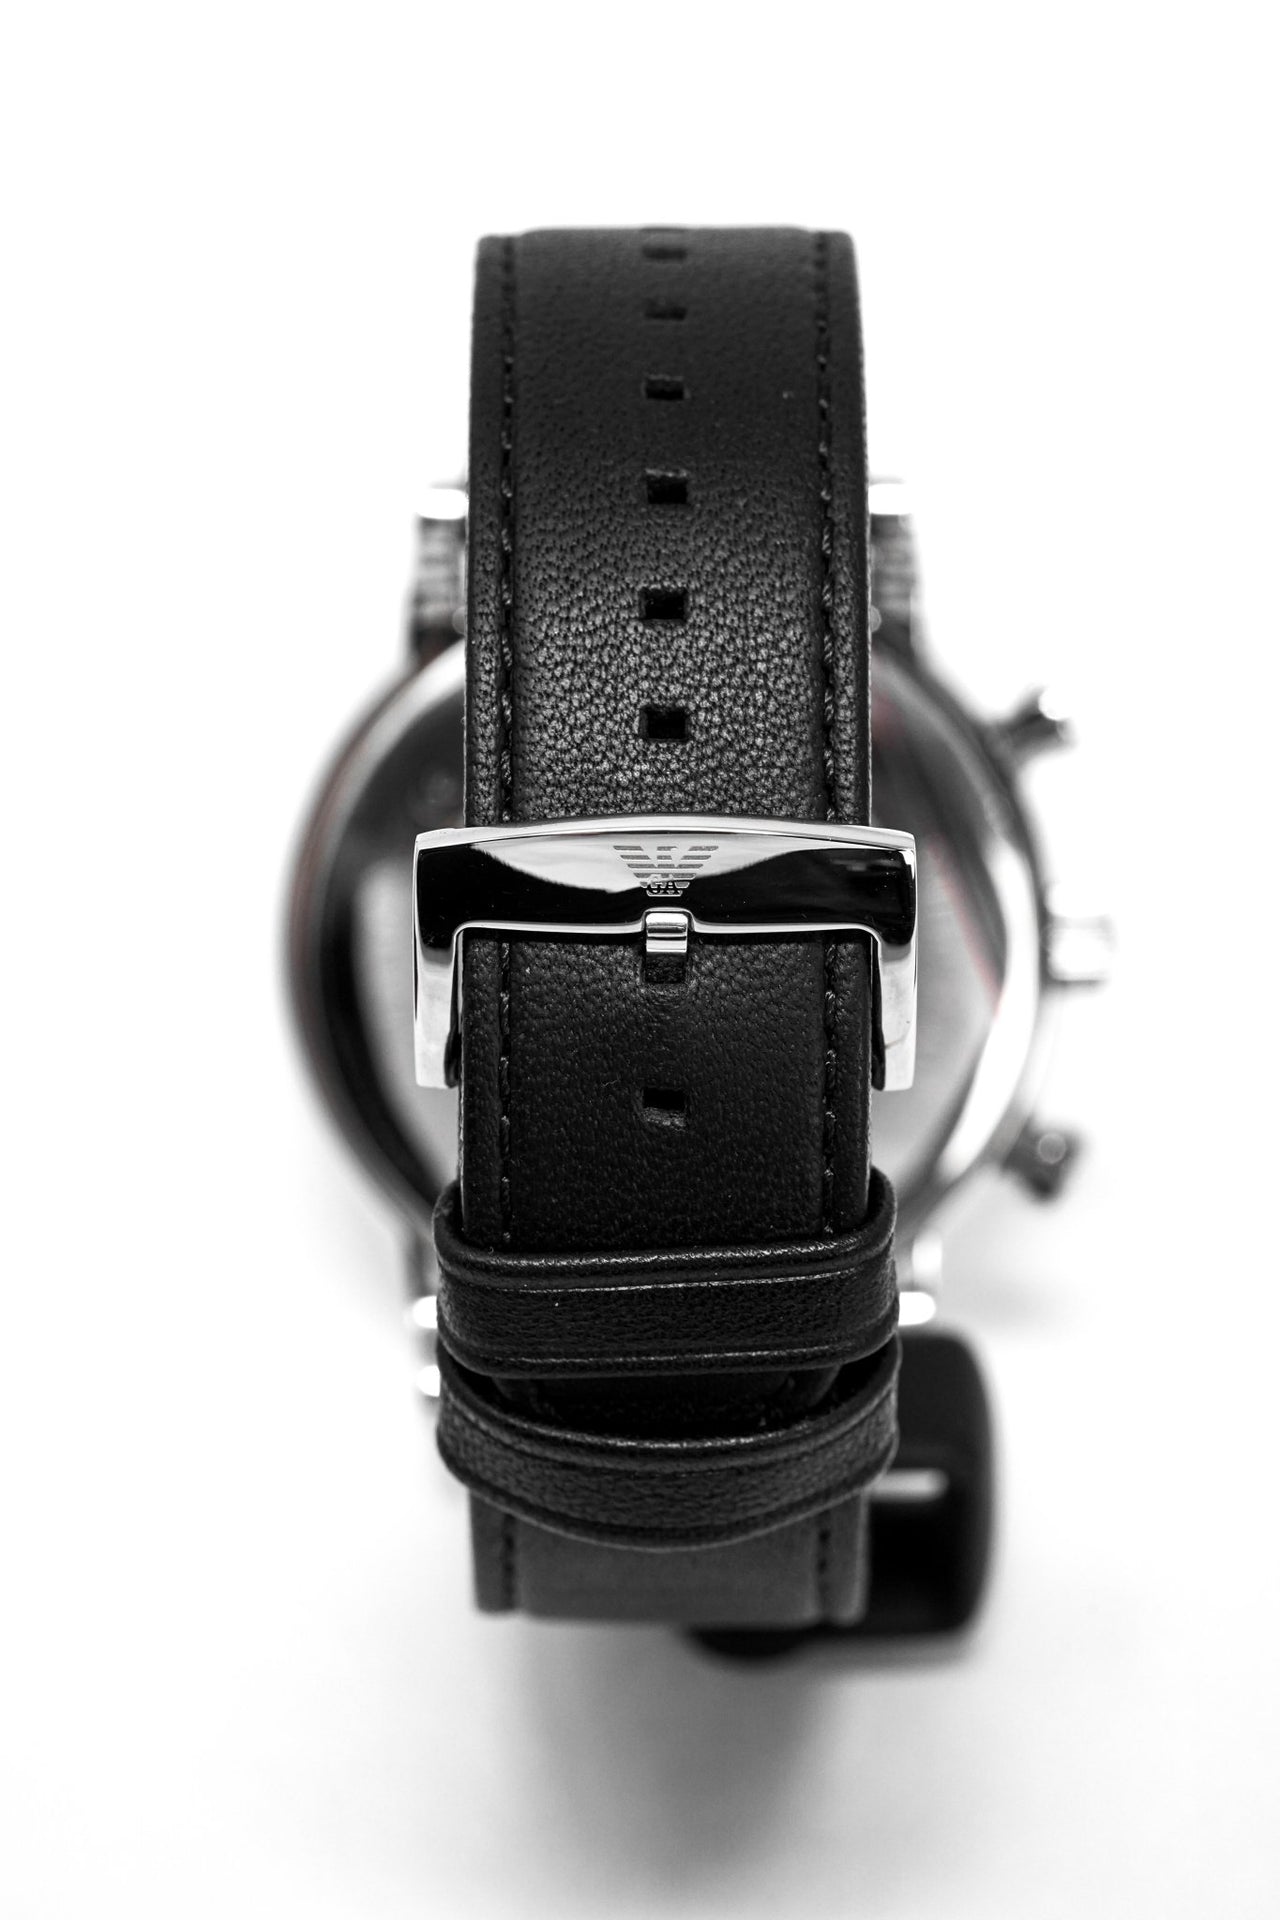 Emporio Armani Men\'s Luigi Chronograph Watch AR1828 – Watches & Crystals